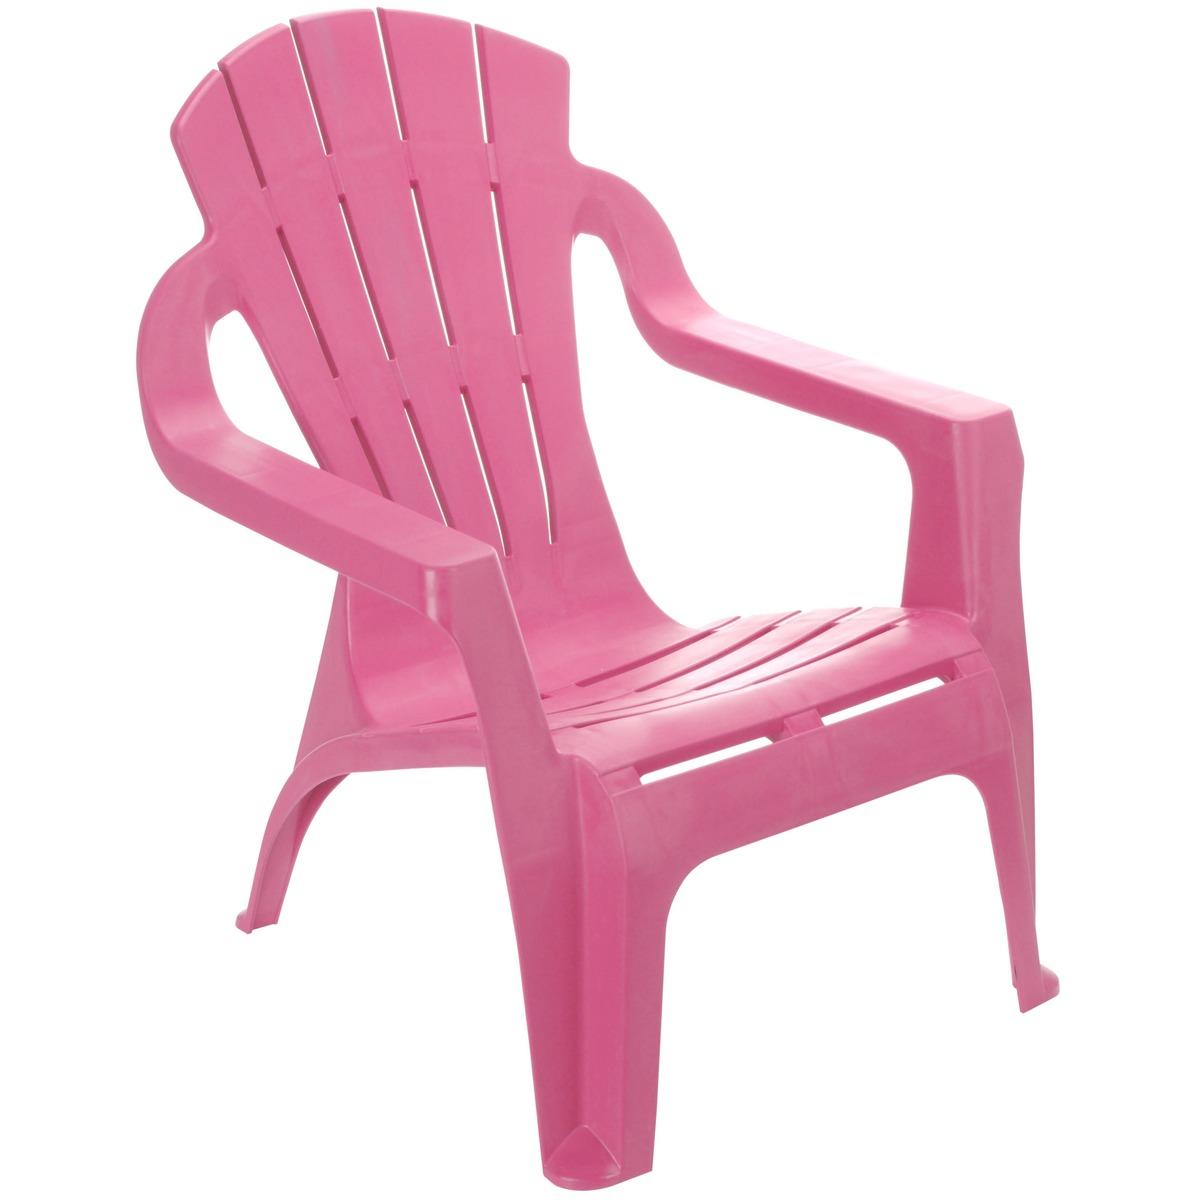 Chaise colorée pour enfant - 33 x 37 x H 44 cm - Différents coloris